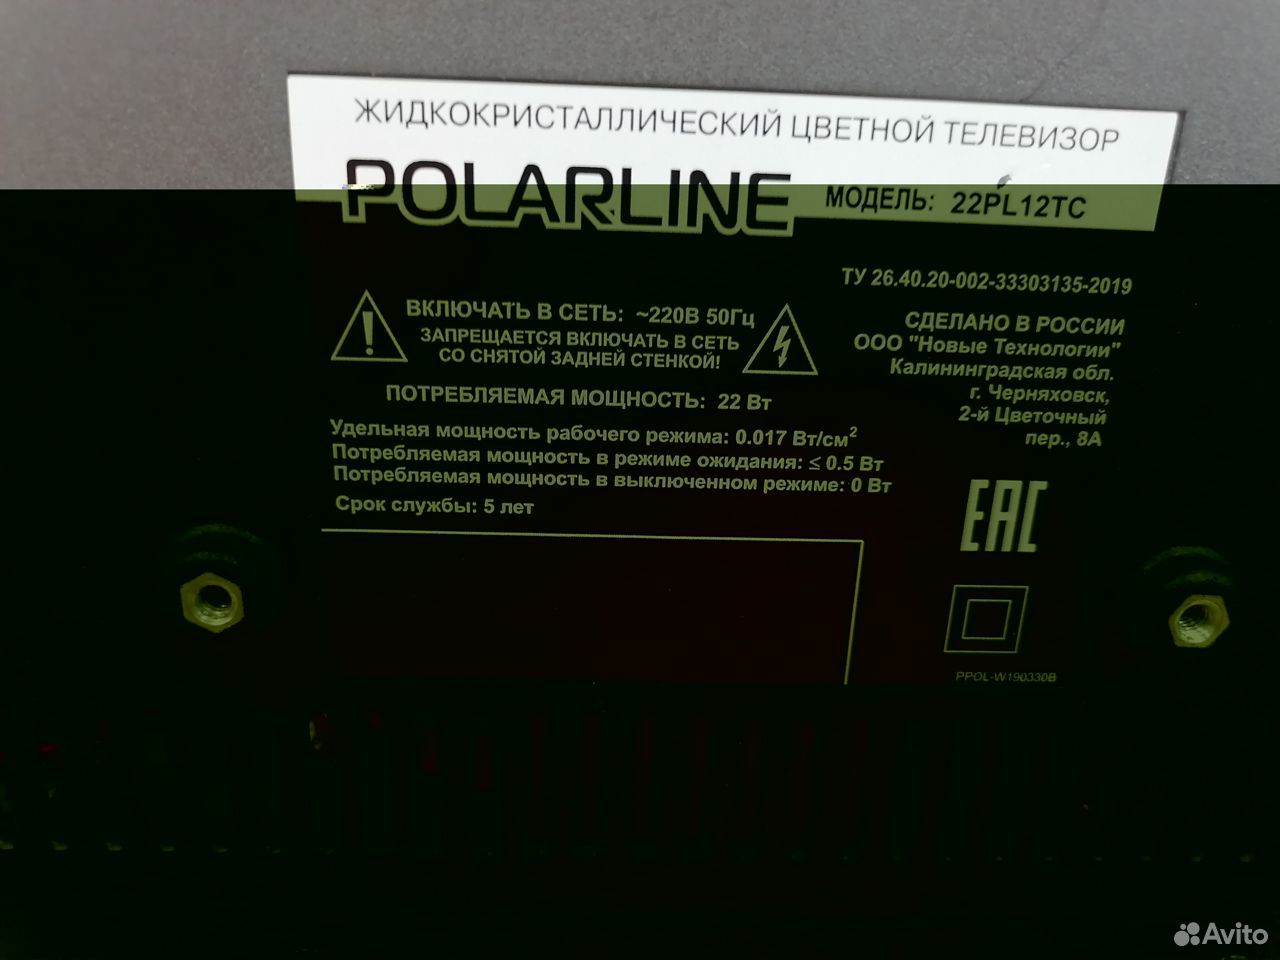 Телевизор Polarline 22PL12TC новый (схи) 89275037380 купить 3